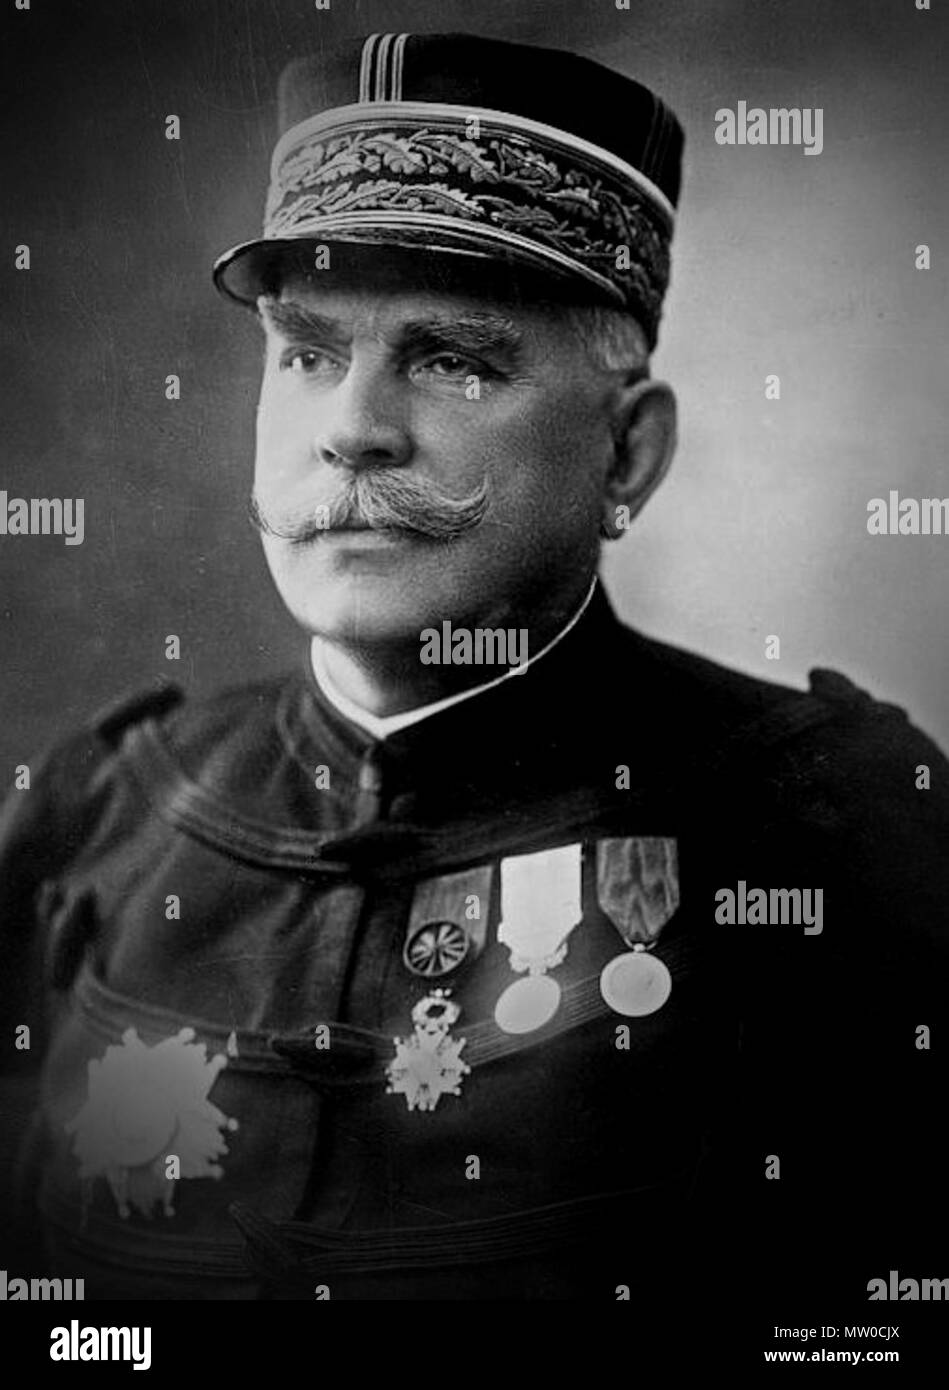 . French : Photo de commandant en chef français, le Maréchal Joseph Joffre . Entre 1914 et 1918. Photo de portrait inconnu 481 Gen Joffre (foncé) Banque D'Images